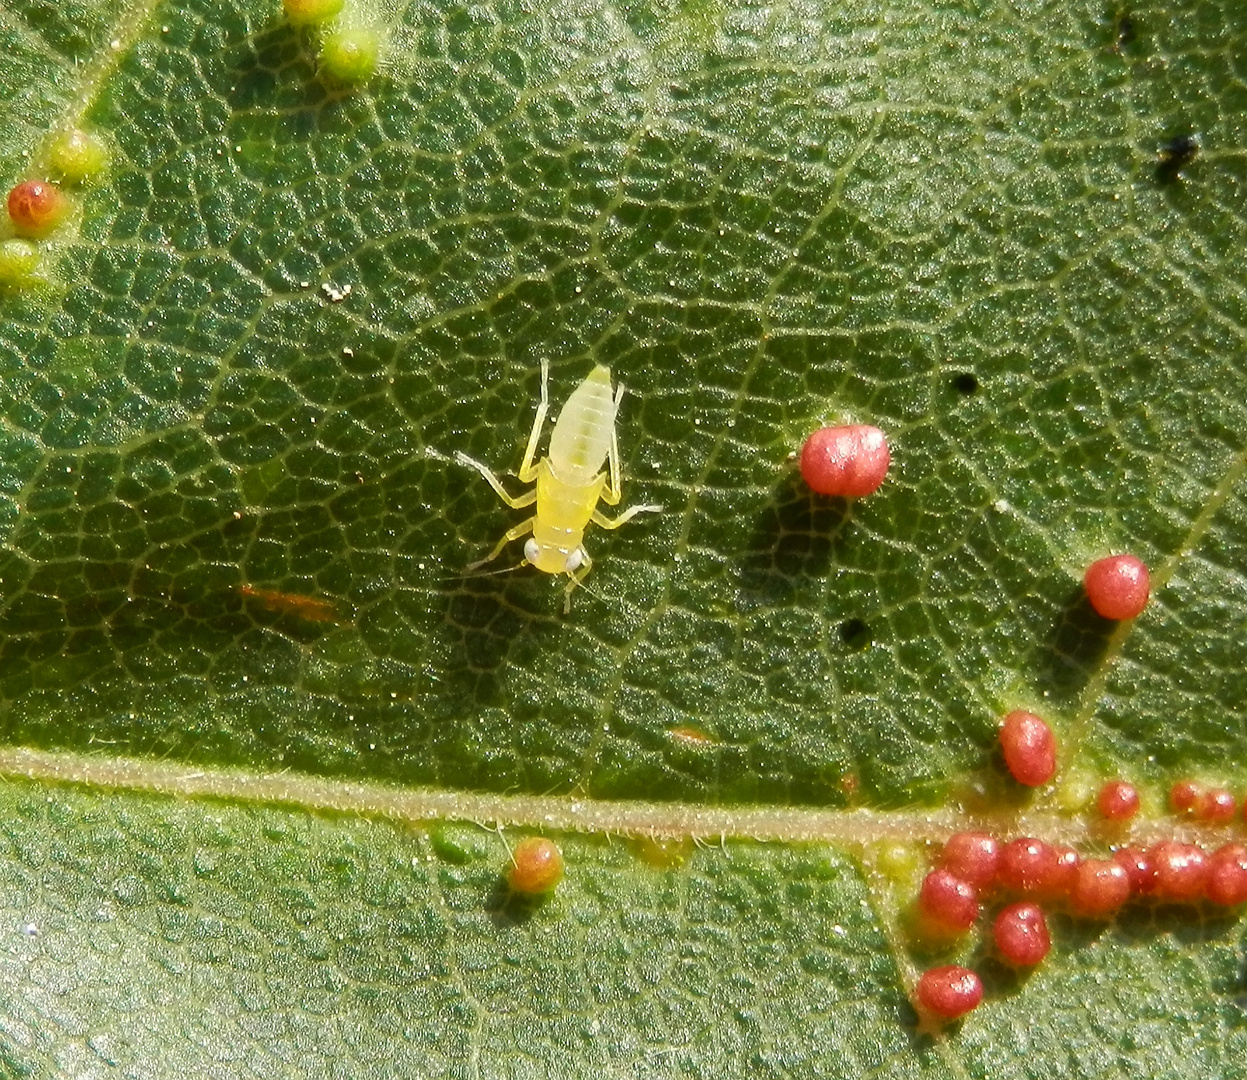 Zikadennymphe und Pflanzengallen auf Spitzahornblatt